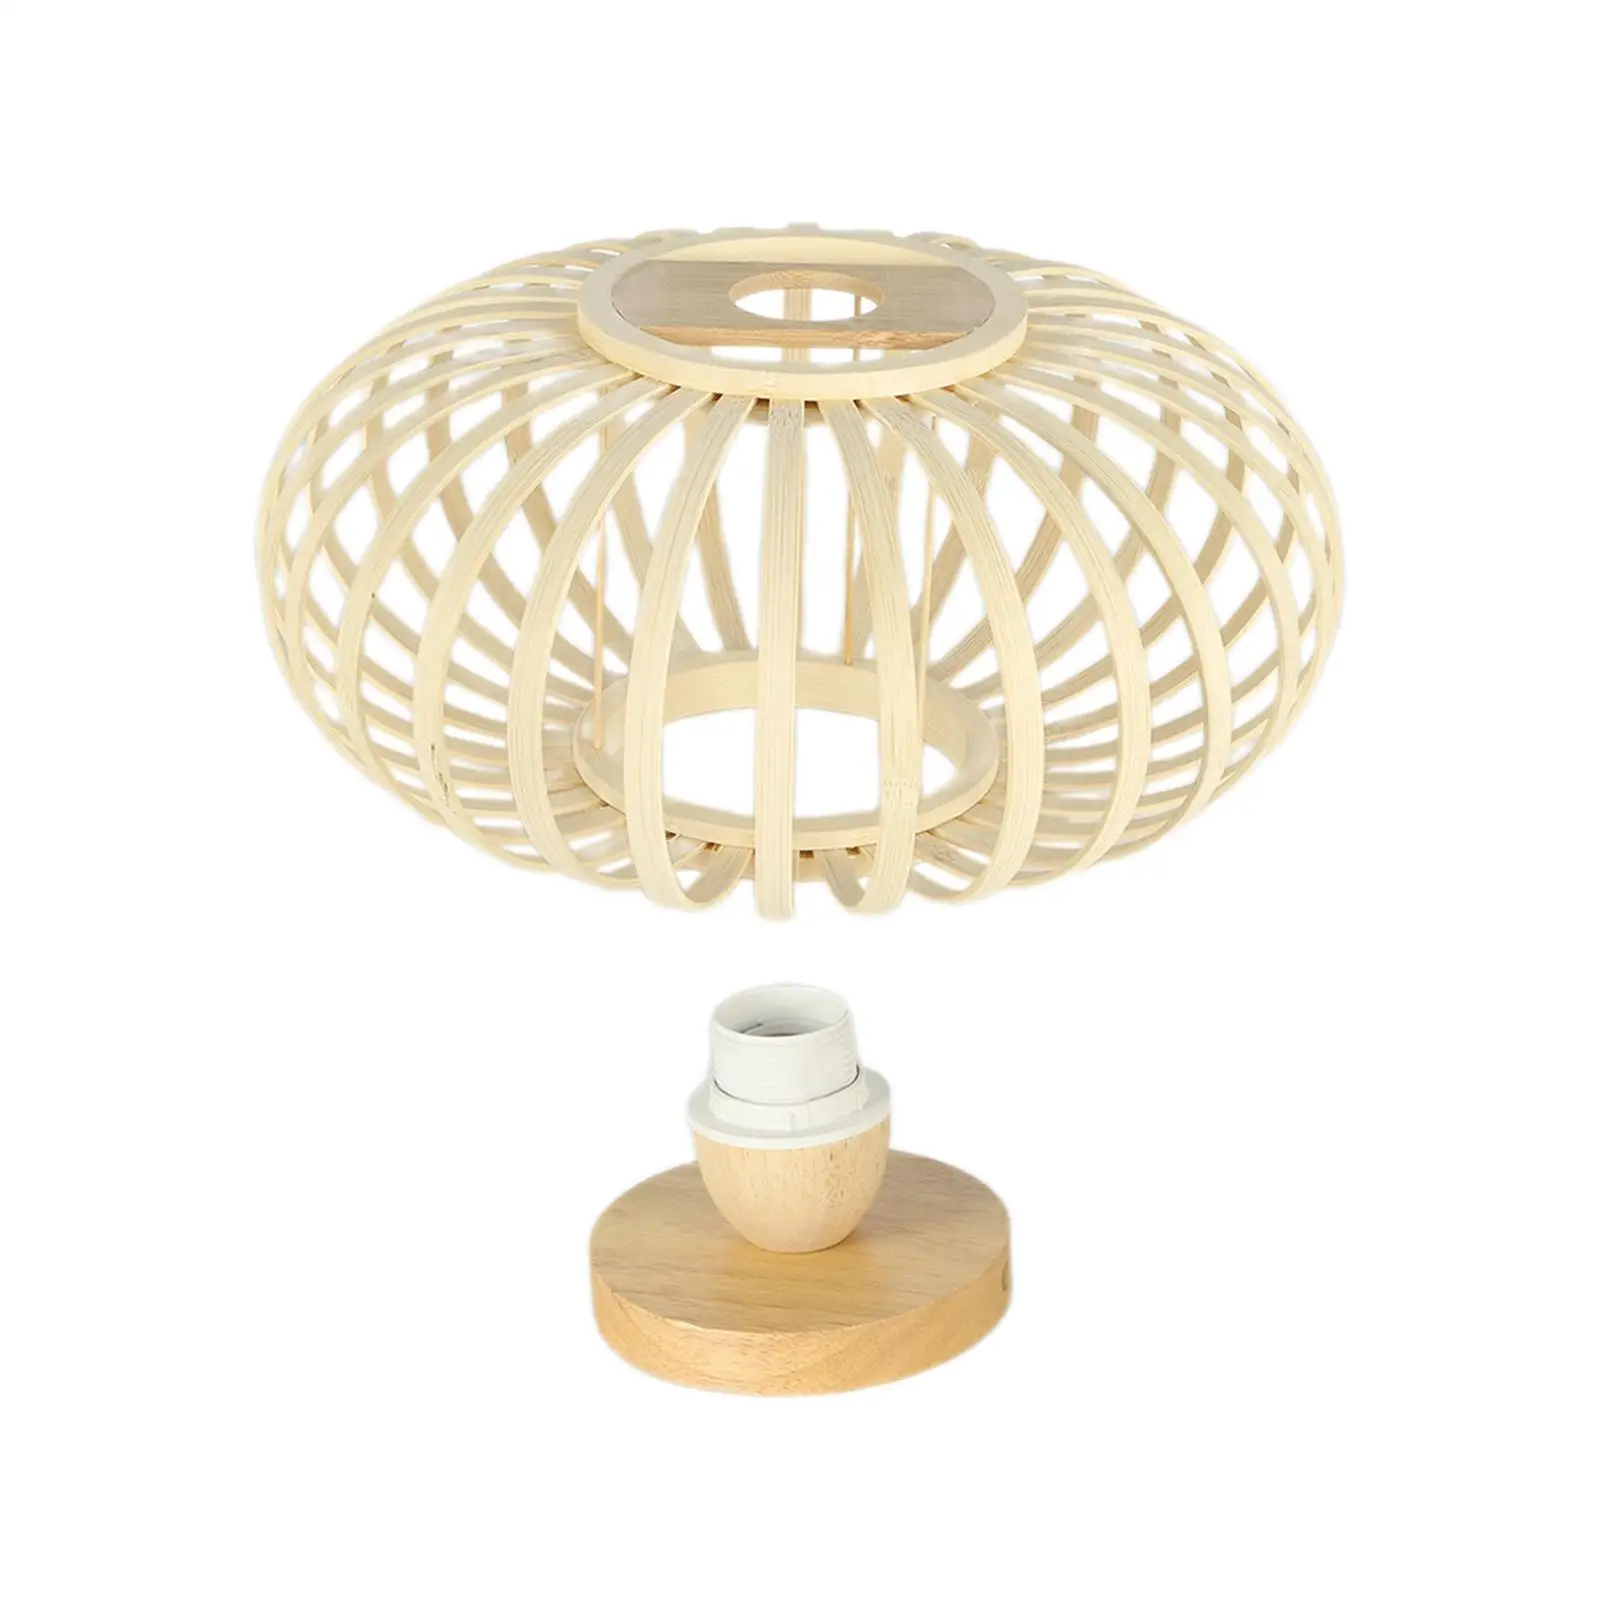 Ceiling Lamp EU Plug E27/E26 Woven Ceiling Light Shade for Home Bathroom Bar